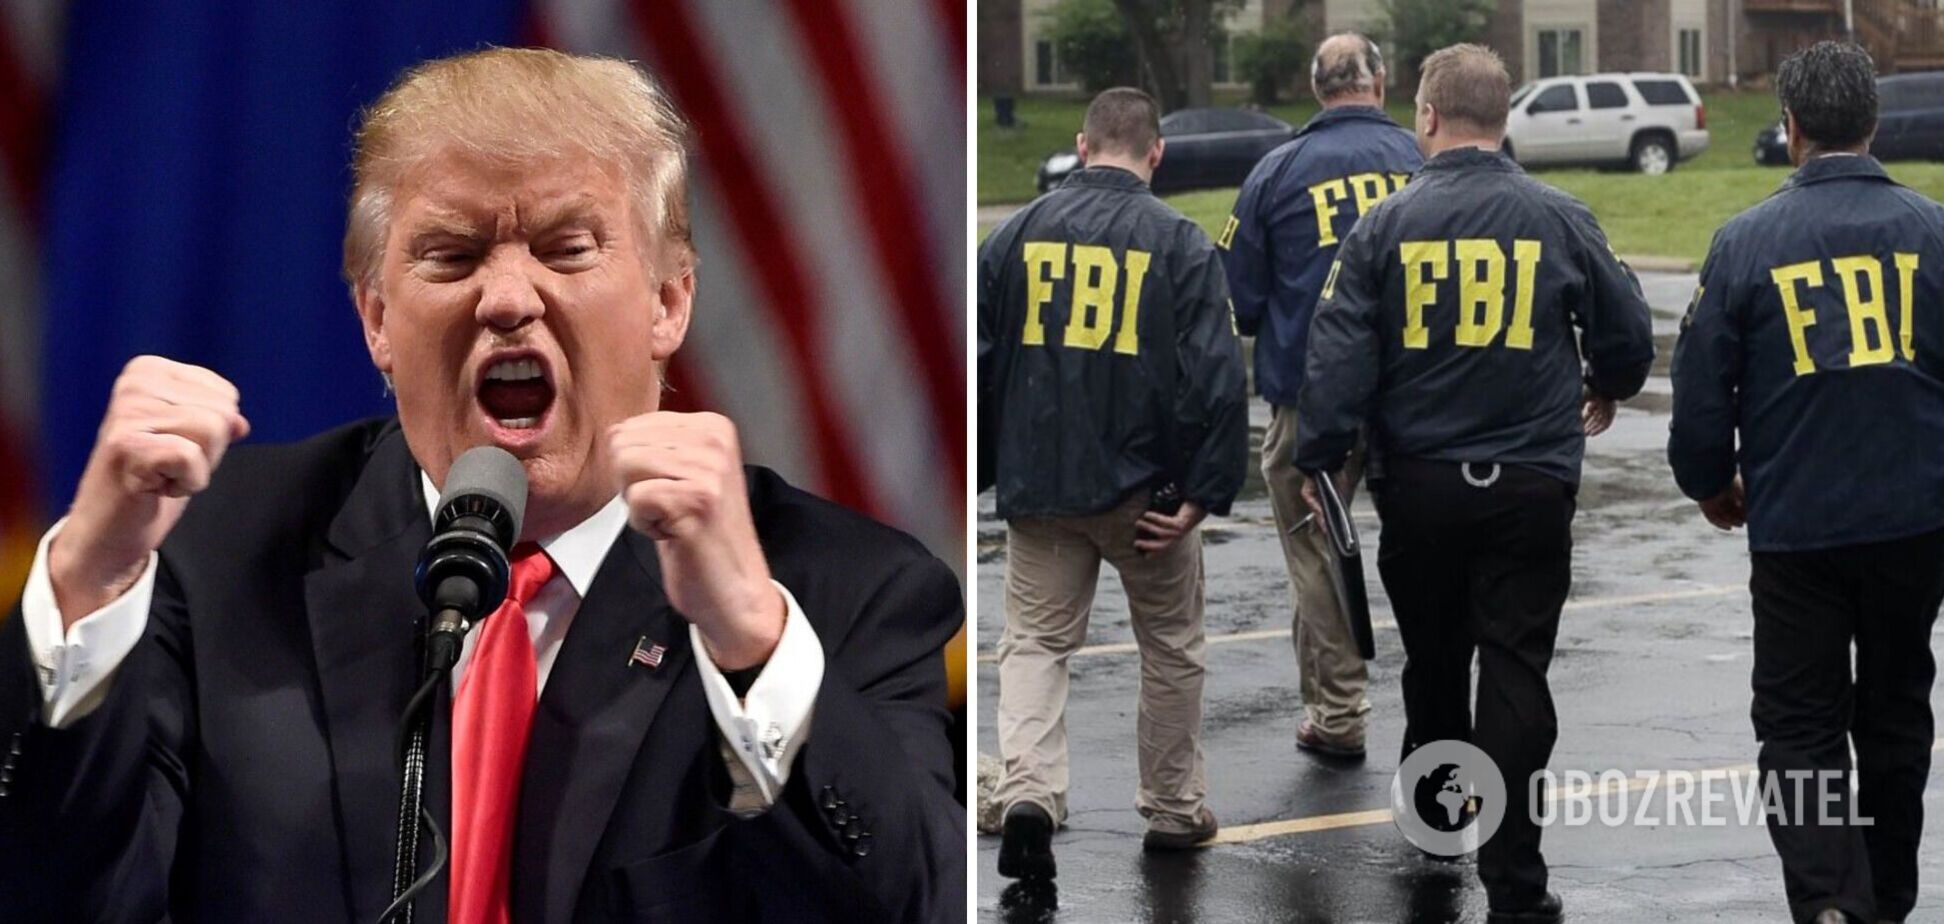 ФБР провело обшуки у резиденції Трампа: він назвав дії силовиків 'нападом' і звинуватив їх у зломі сейфу